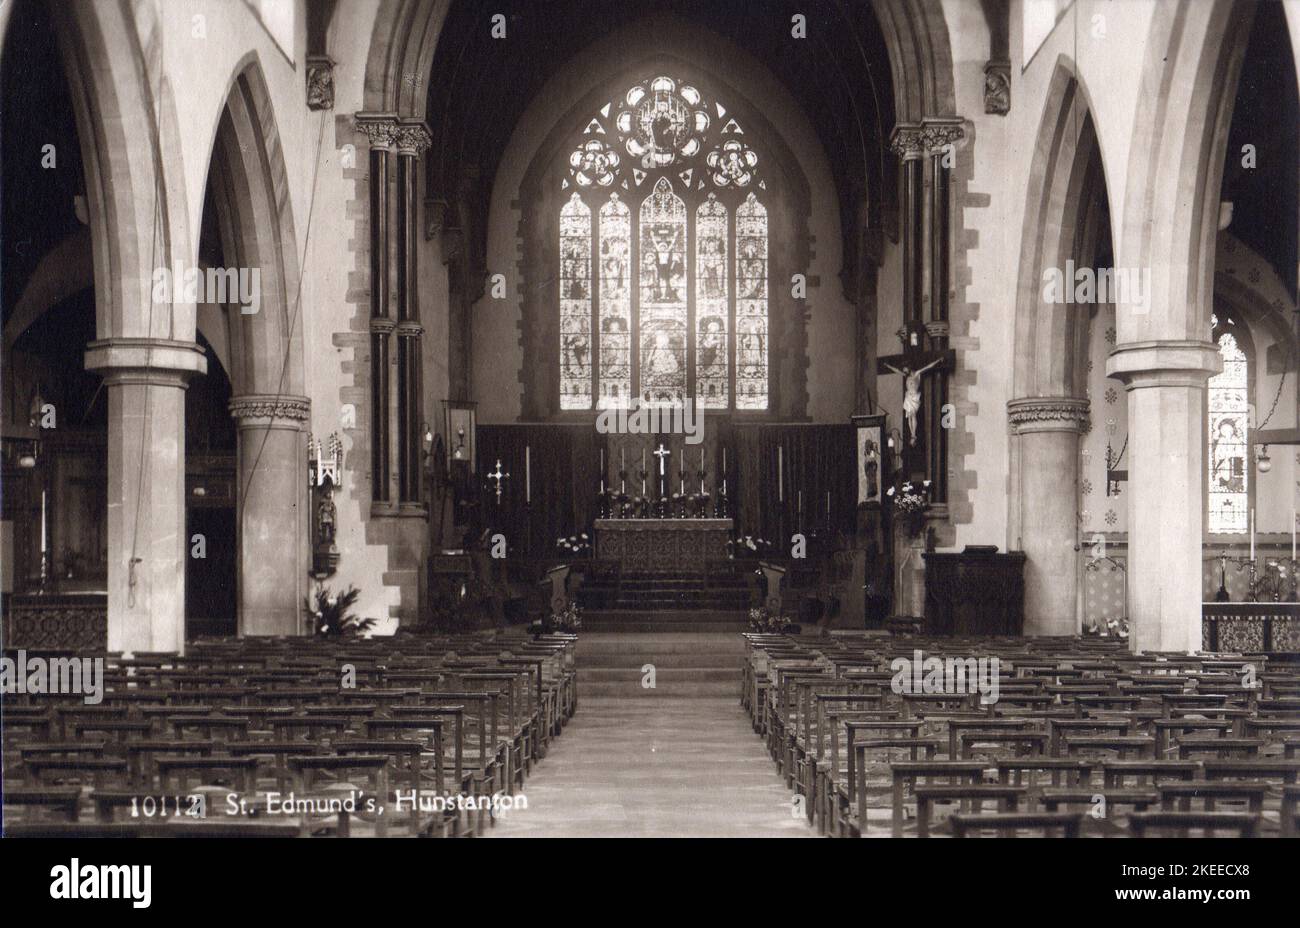 Das Innere der St. Edmund's Church, Hunstanton, Norfolk mit Blick nach Osten, nach einer Postkarte aus dem Jahr 1930s. Die Kirche wurde von Frederick Preedy entworfen und die Bauarbeiten begannen 1865. Das ursprüngliche Design forderte einen nordwestlichen Turm, aber dieser wurde nie aus Mangel an Mitteln gebaut. Stockfoto